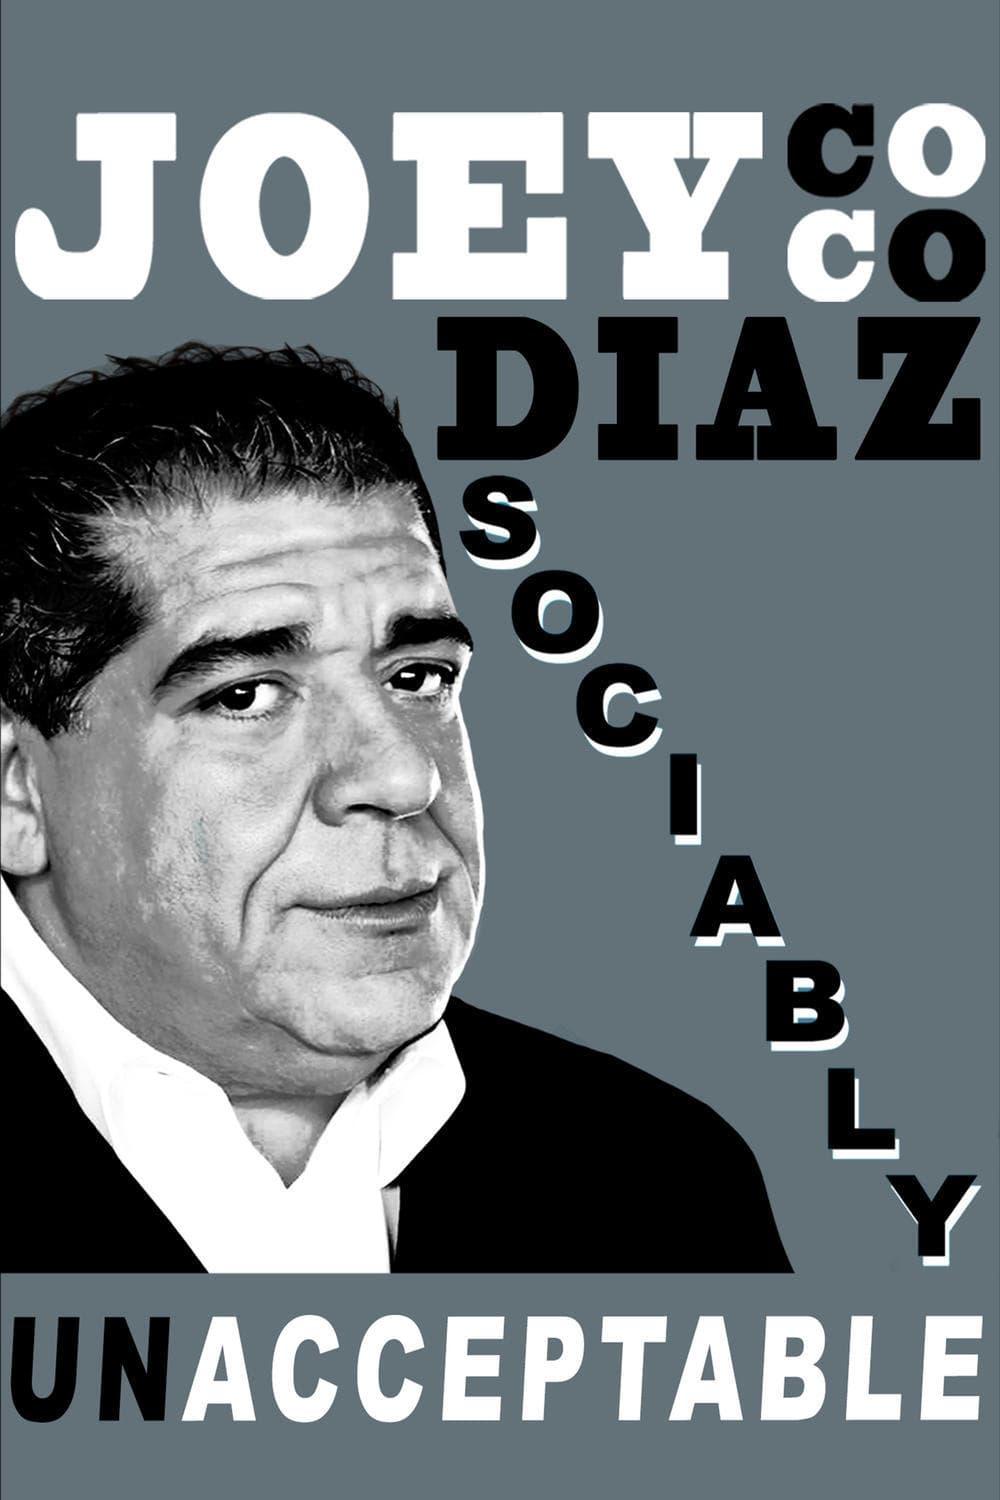 Joey Coco Diaz: Sociably UnAcceptable poster